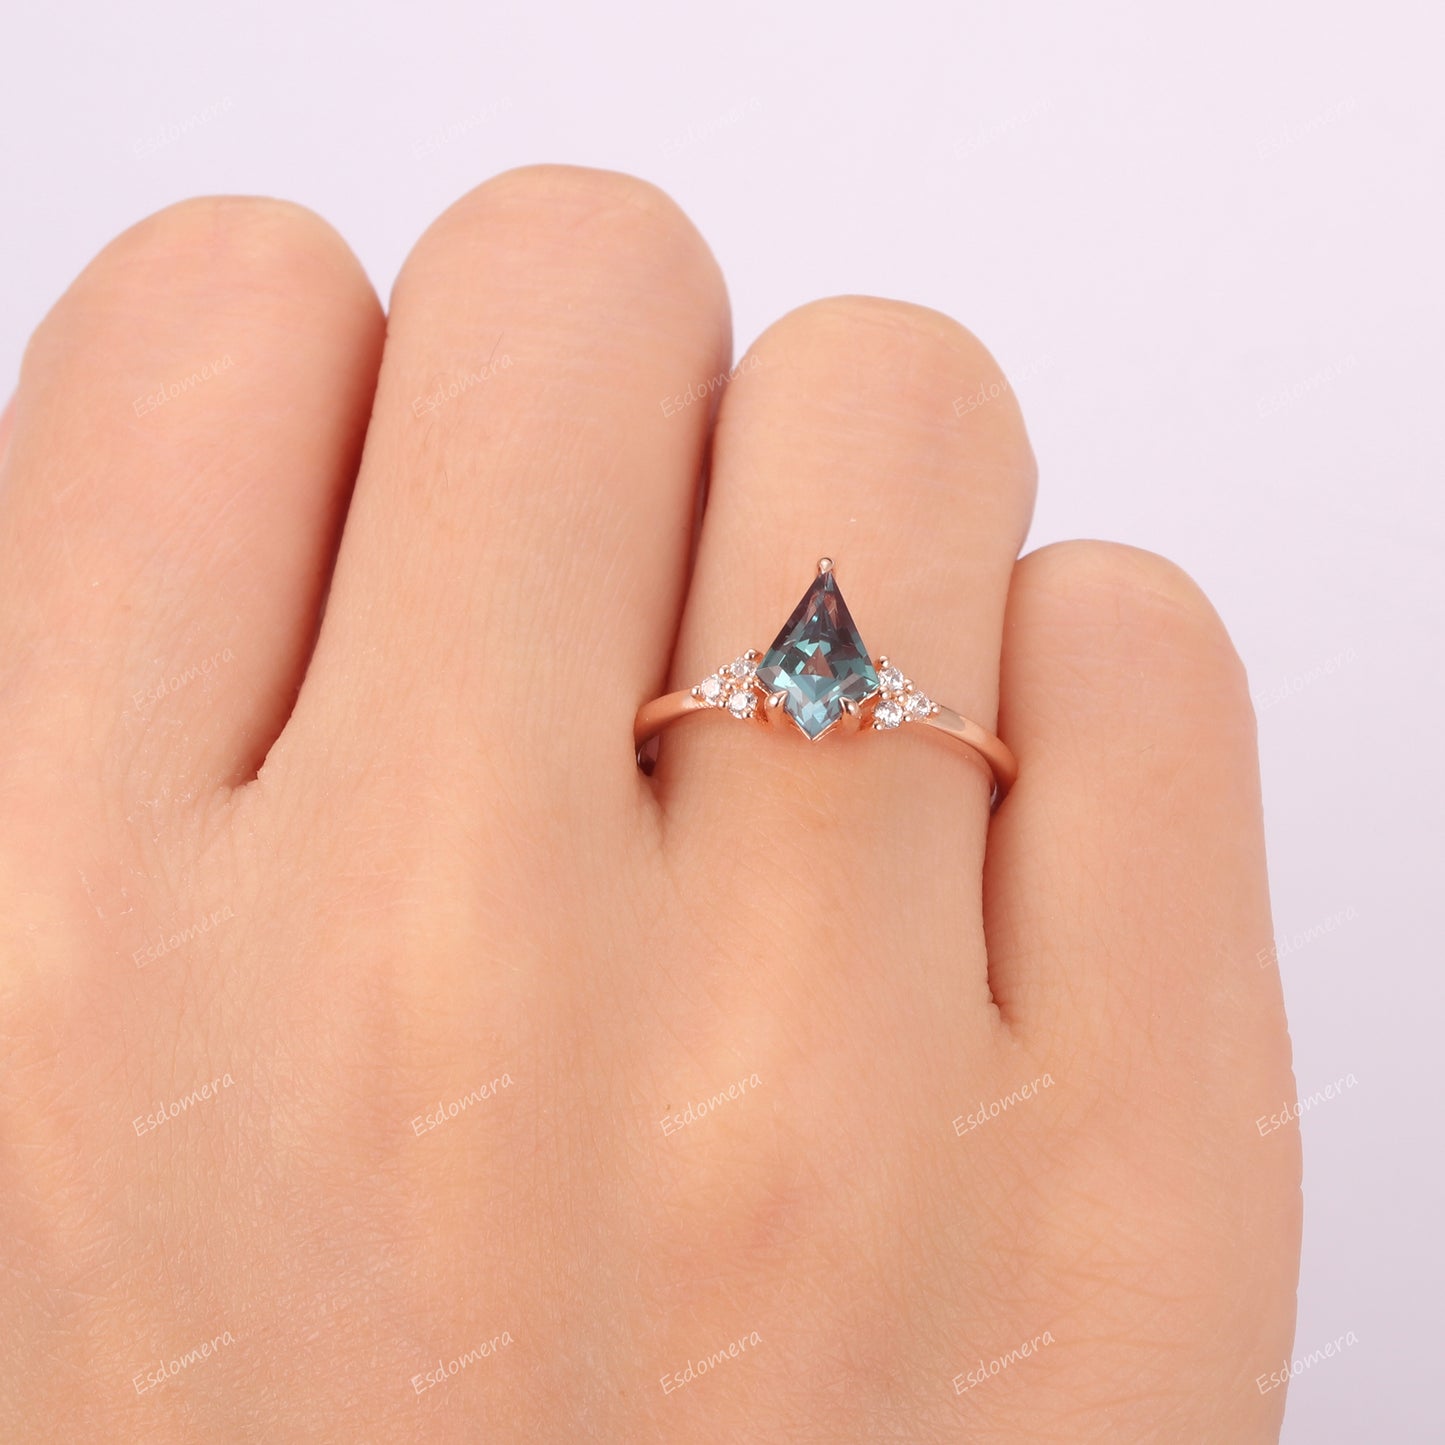 Classic Kite Cut Alexandrite Engagement Ring For Her, Moissanite Cluster June Birthstone Ring, 14k Rose Gold Anniversary Ring For Women